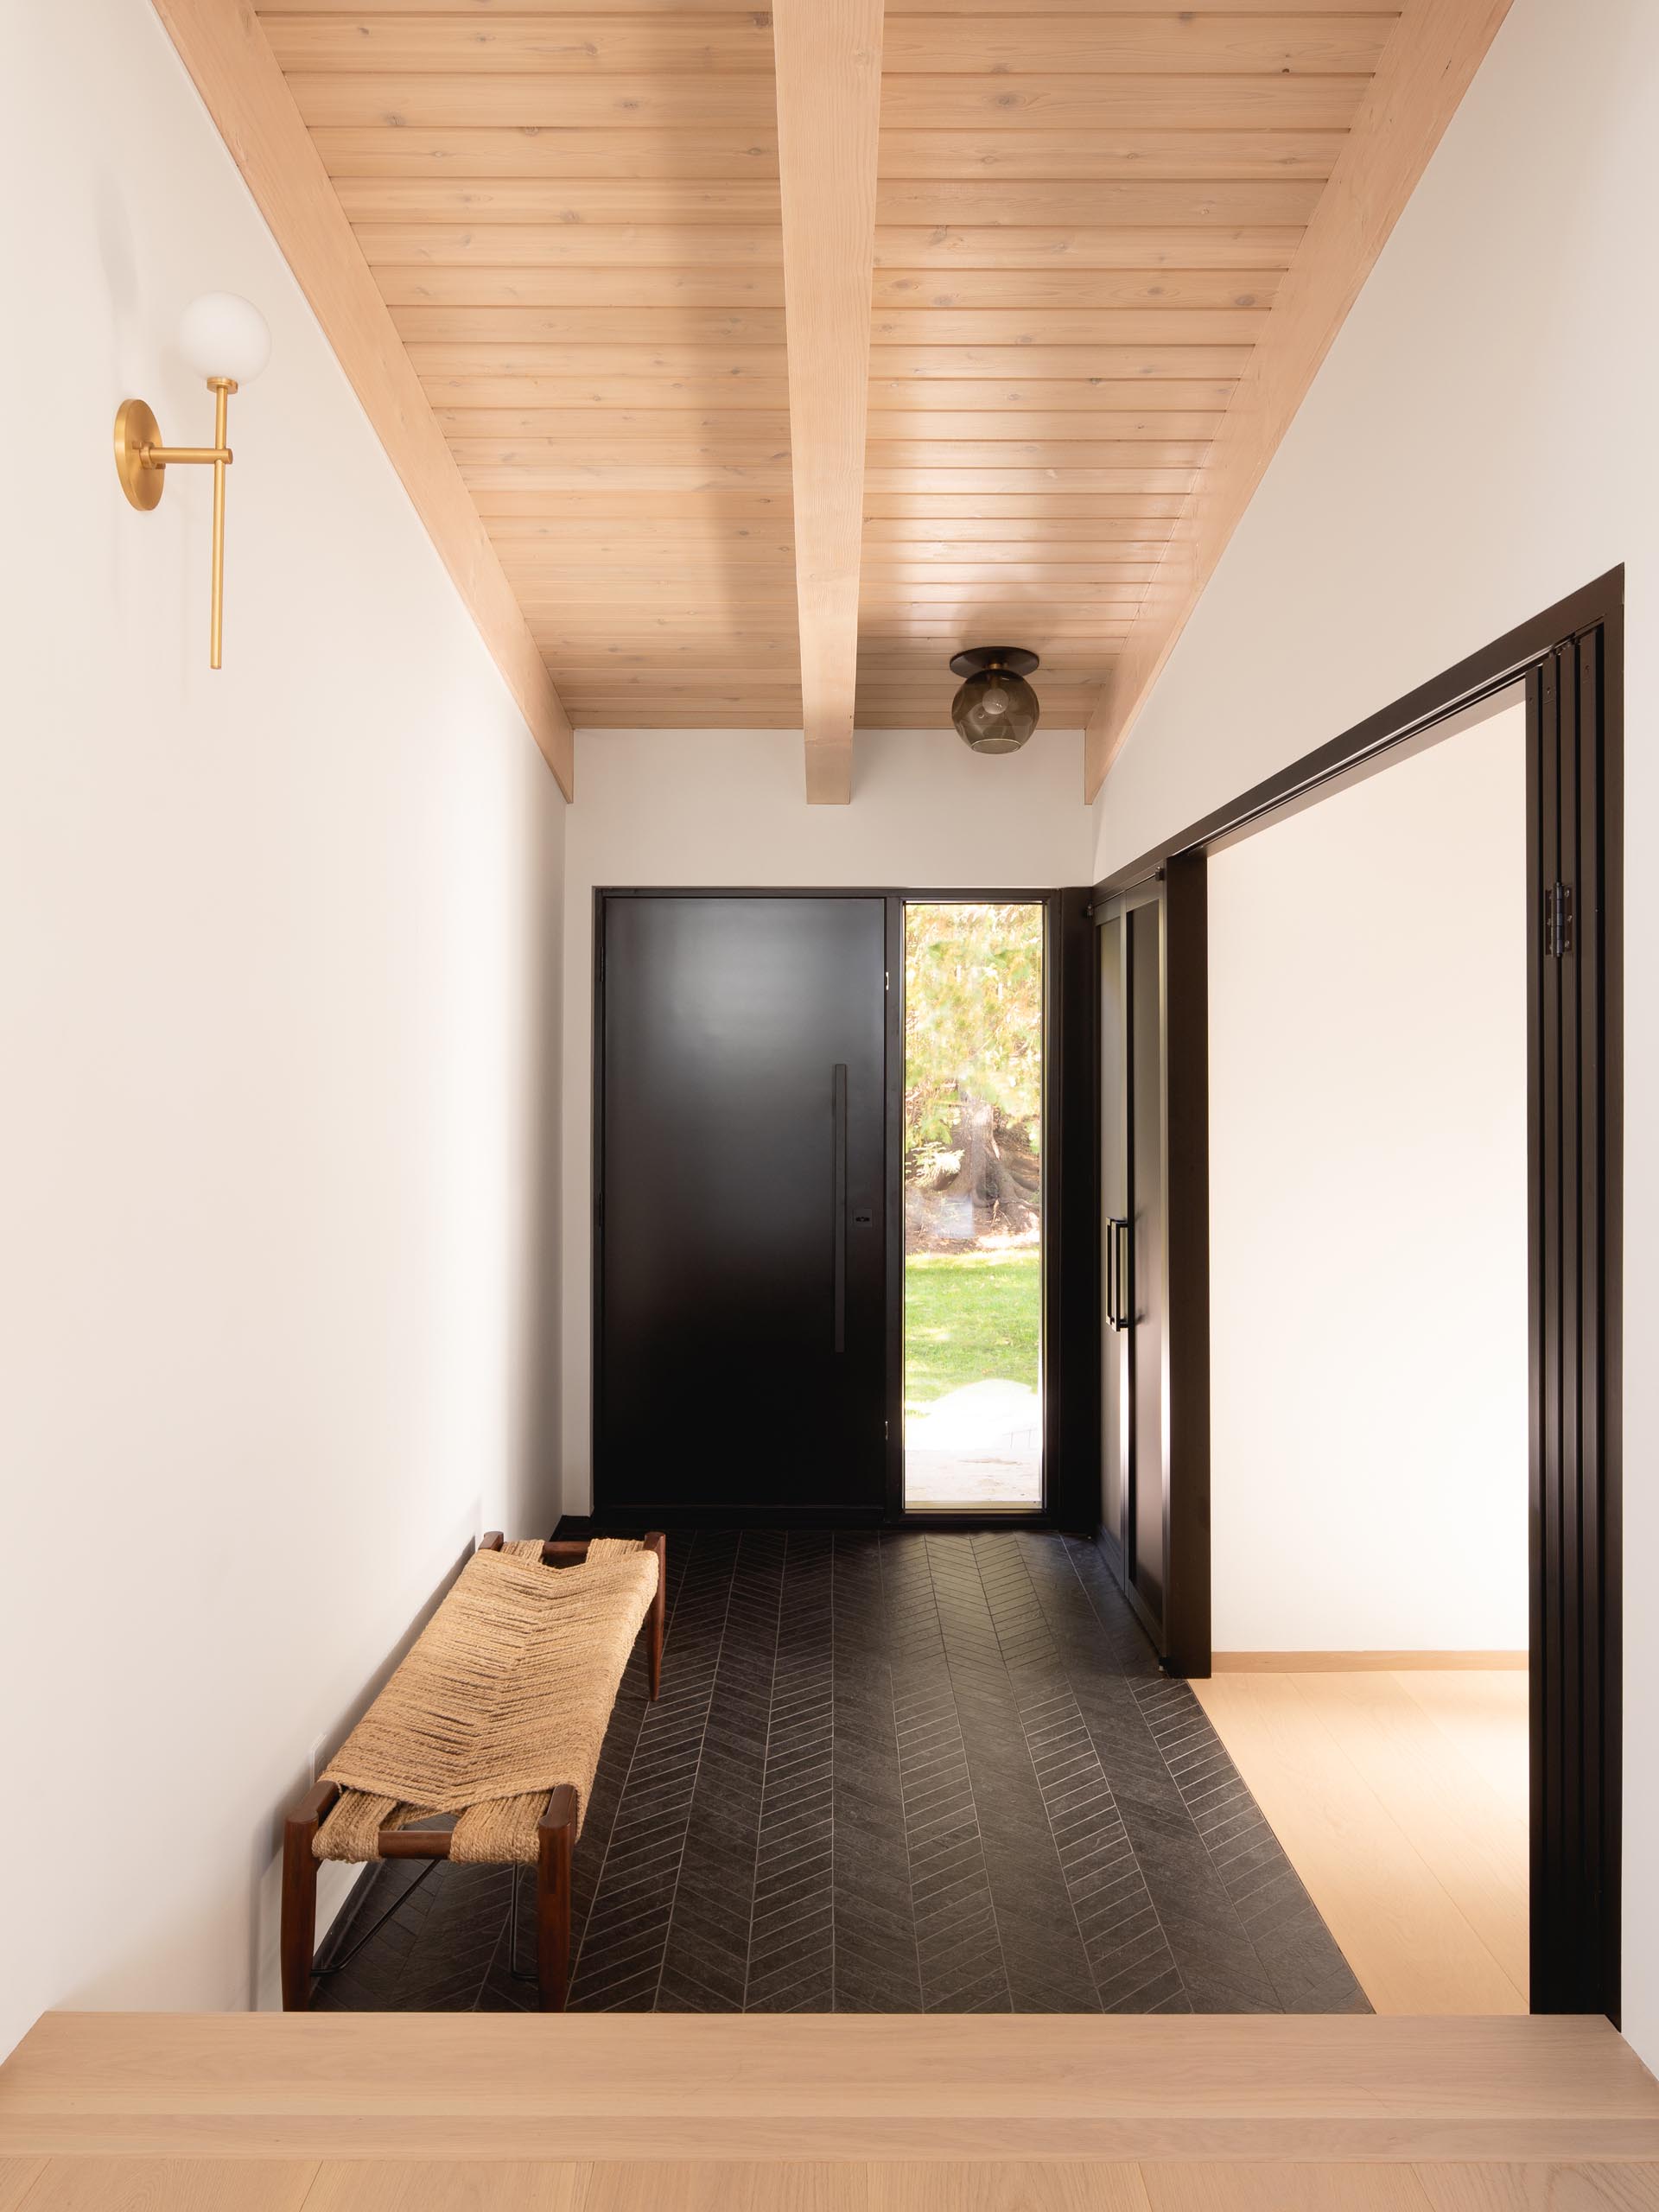 Этот современный вход демонстрирует потолок из светлого дерева, а пол выложен черной плиткой с шевронным узором.